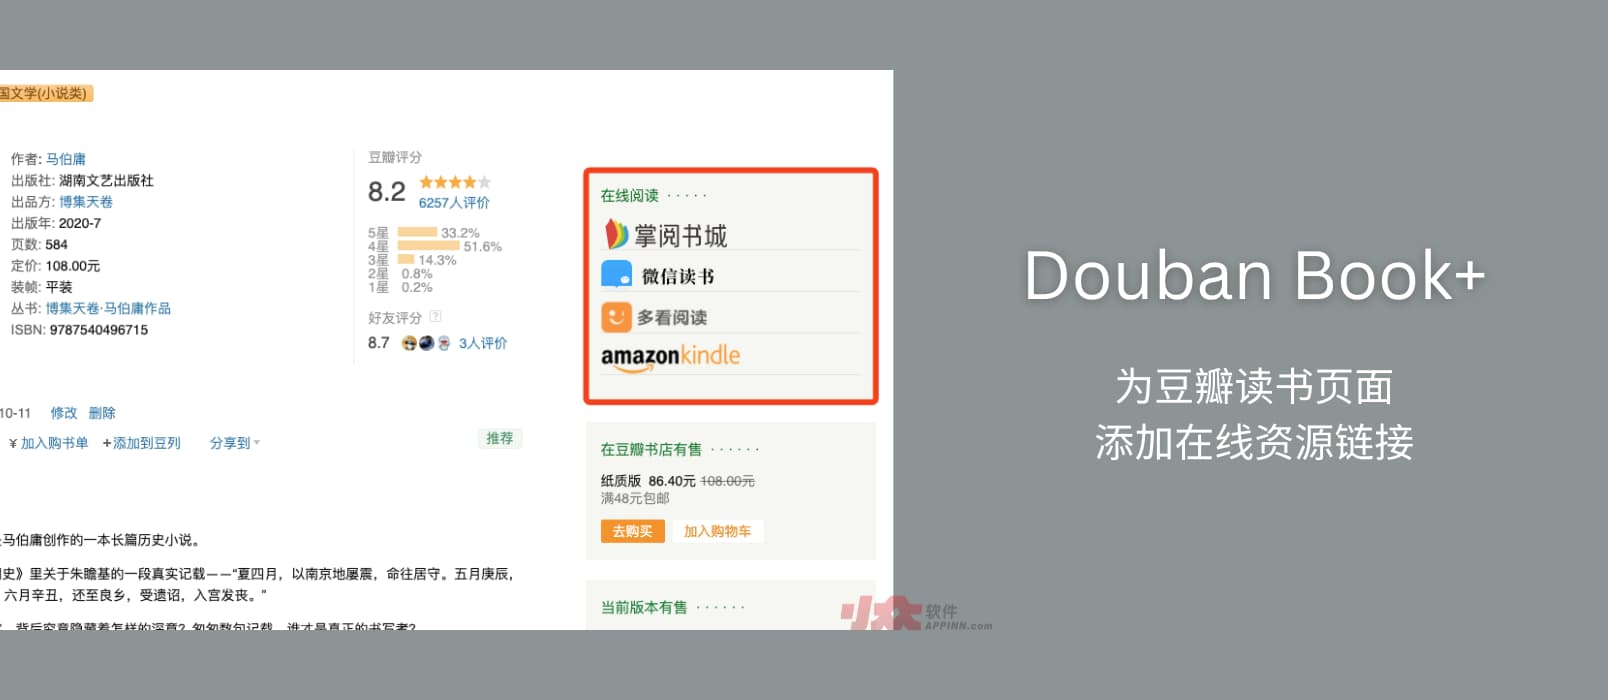 Douban Book+ – 为豆瓣读书页面添加微信读书、Kindle、多看、蜗牛等在线资源链接